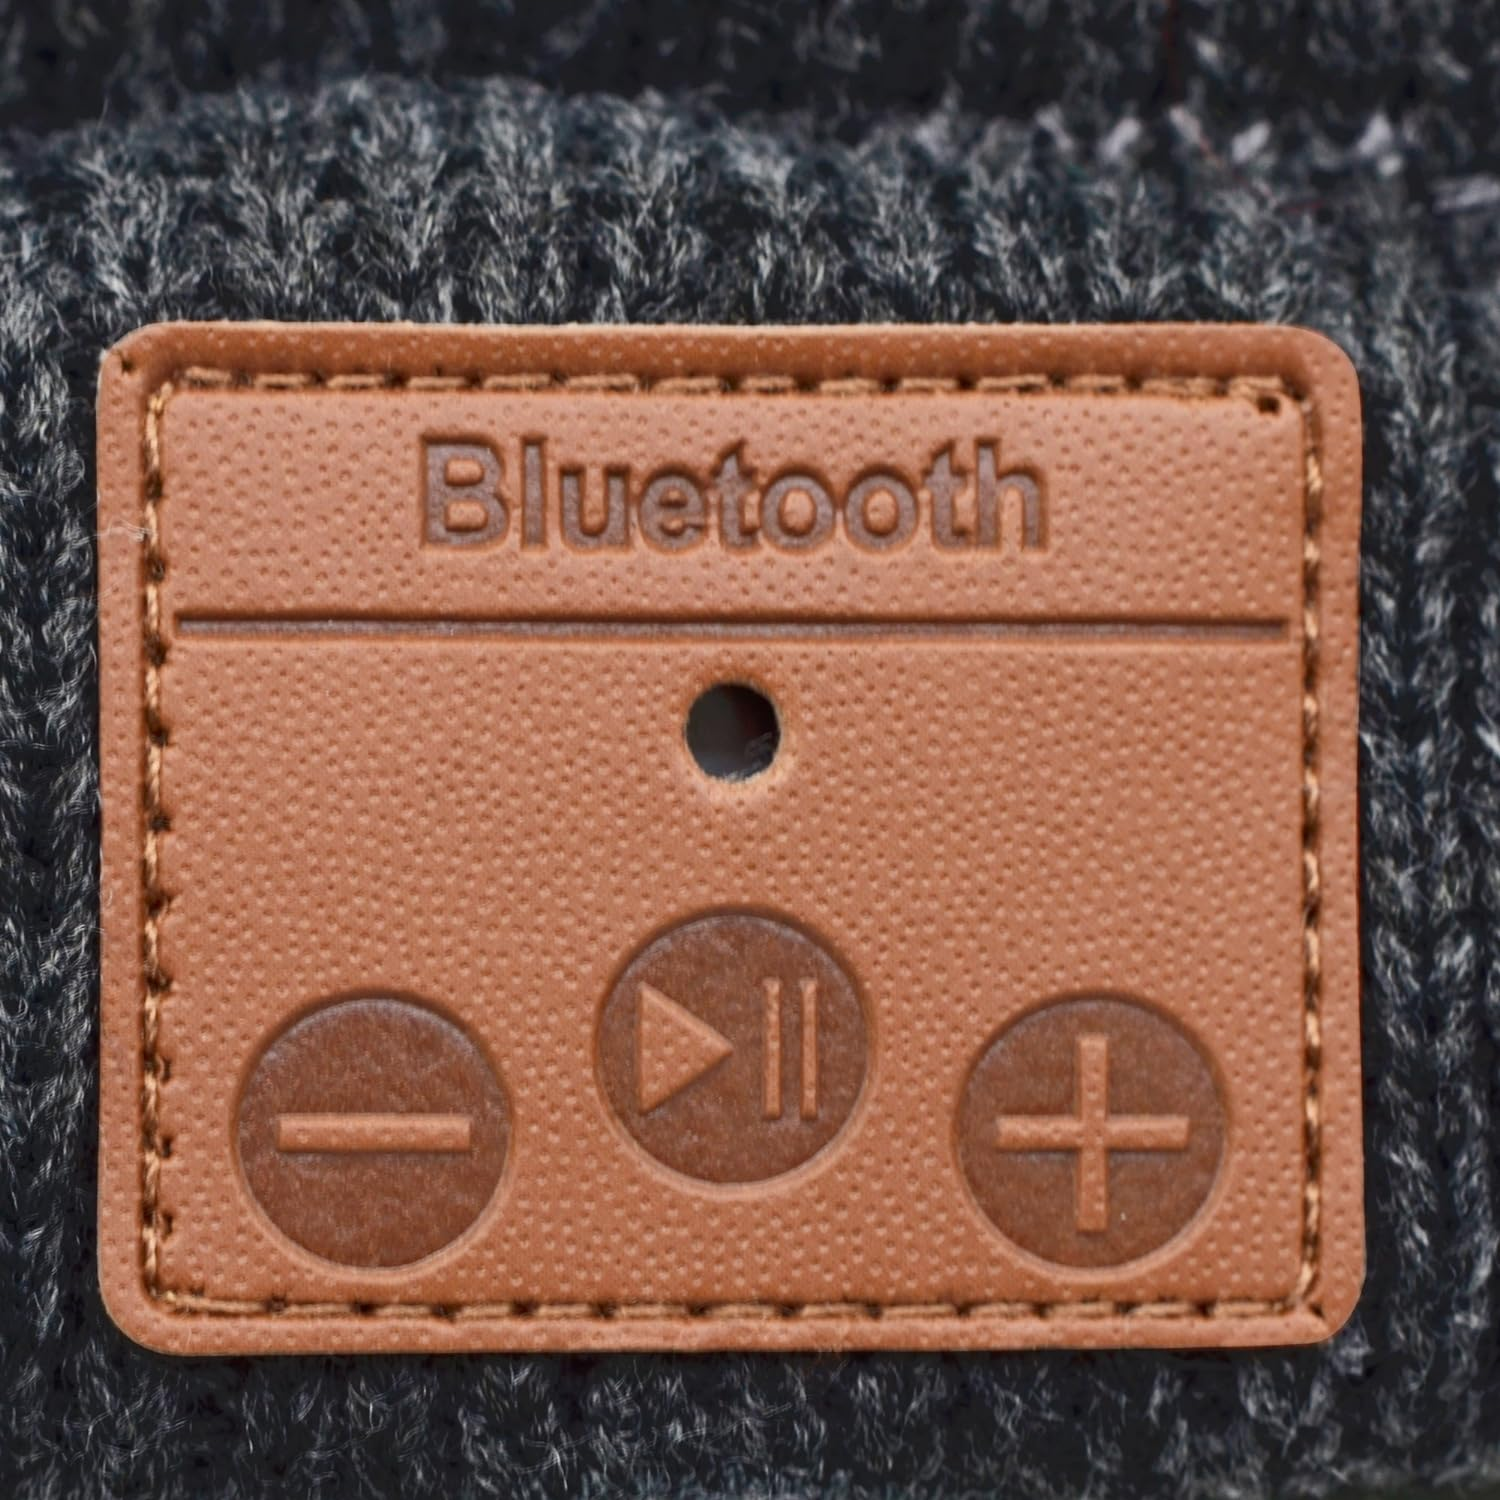 Bluetooth LEICKE Beanie, Grau Music Audio On-ear